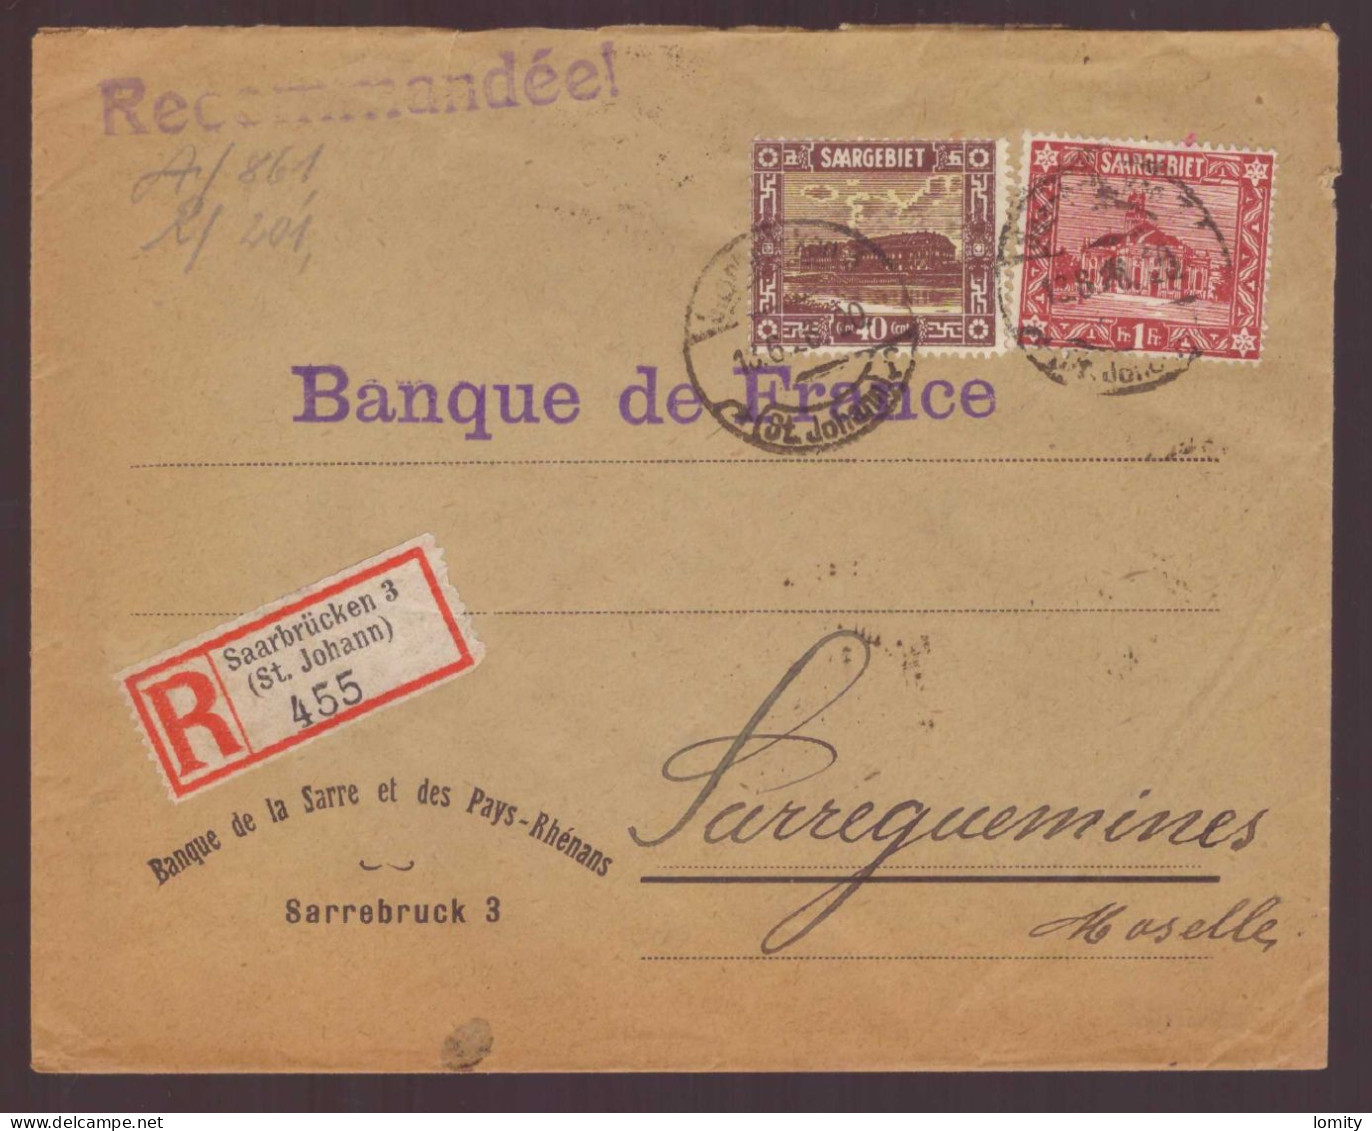 Sarre Lettre Recommandée Brief Pli Recommandé Saarbrucken St Johann Pour Banque De France Sarreguemines Timbre N°93 97 - Covers & Documents